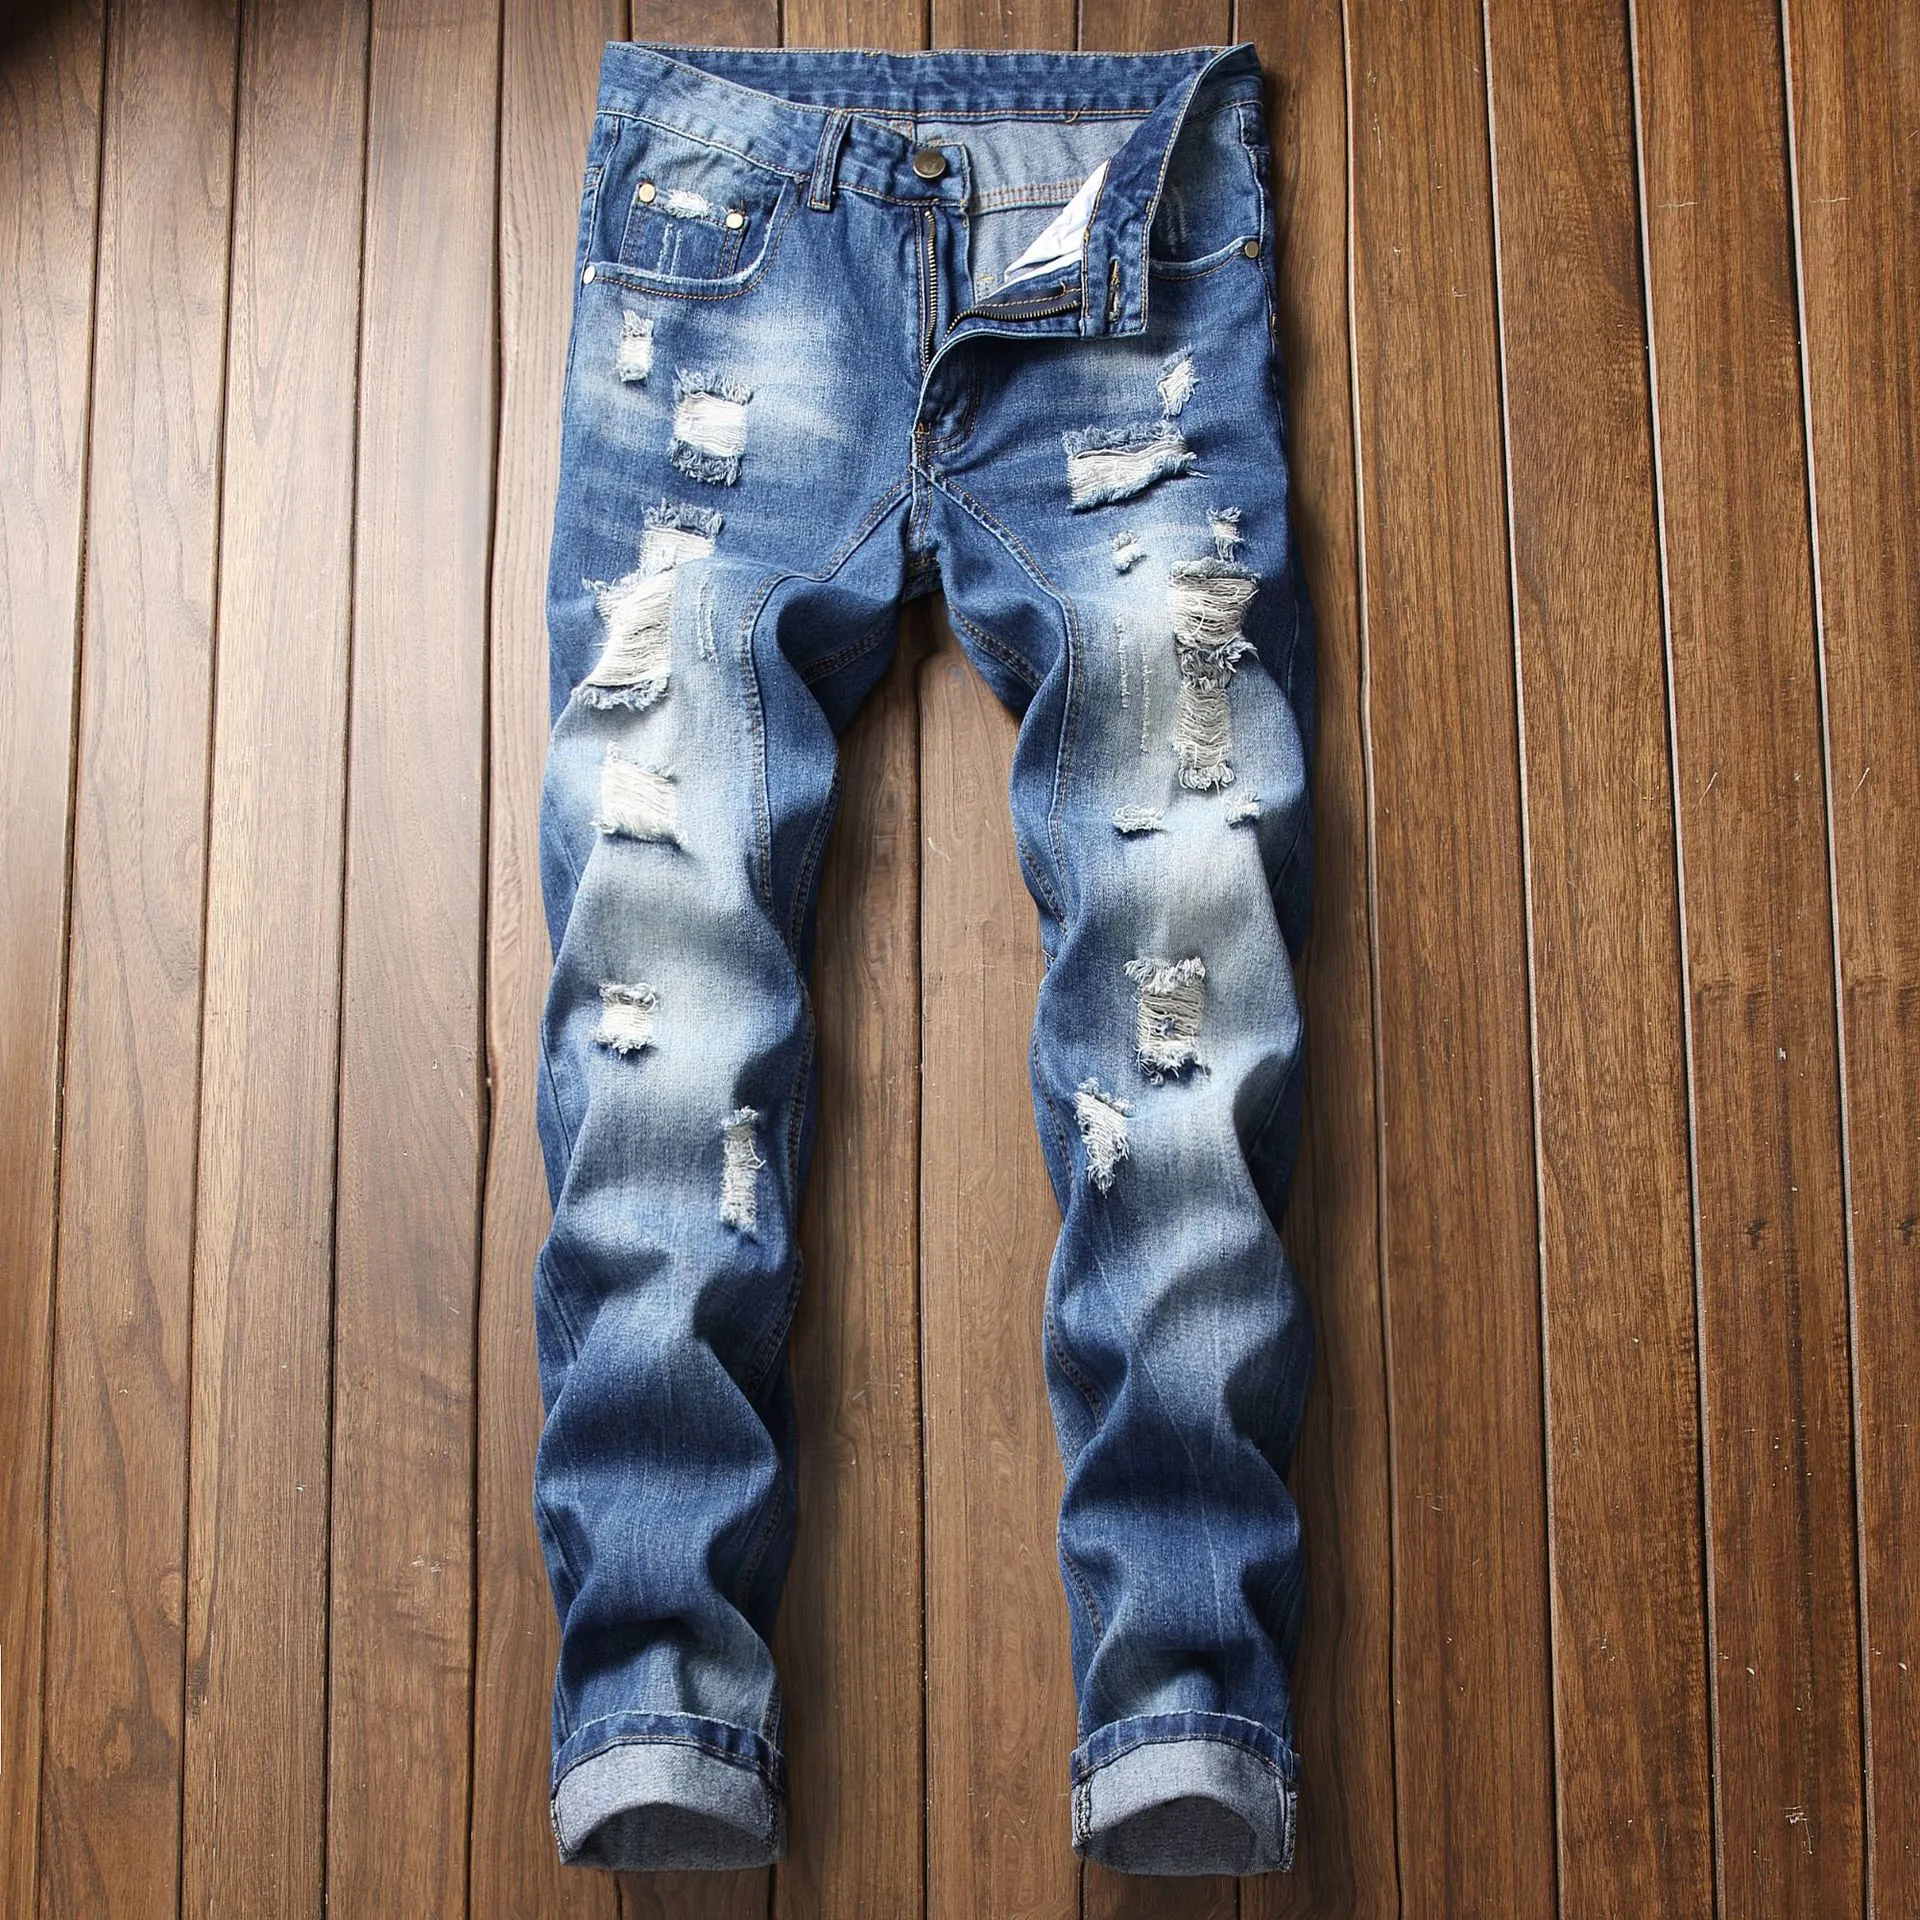 New Man Jeans Blue Classic Knees Holes Cotton Denim Pants Fashion ...